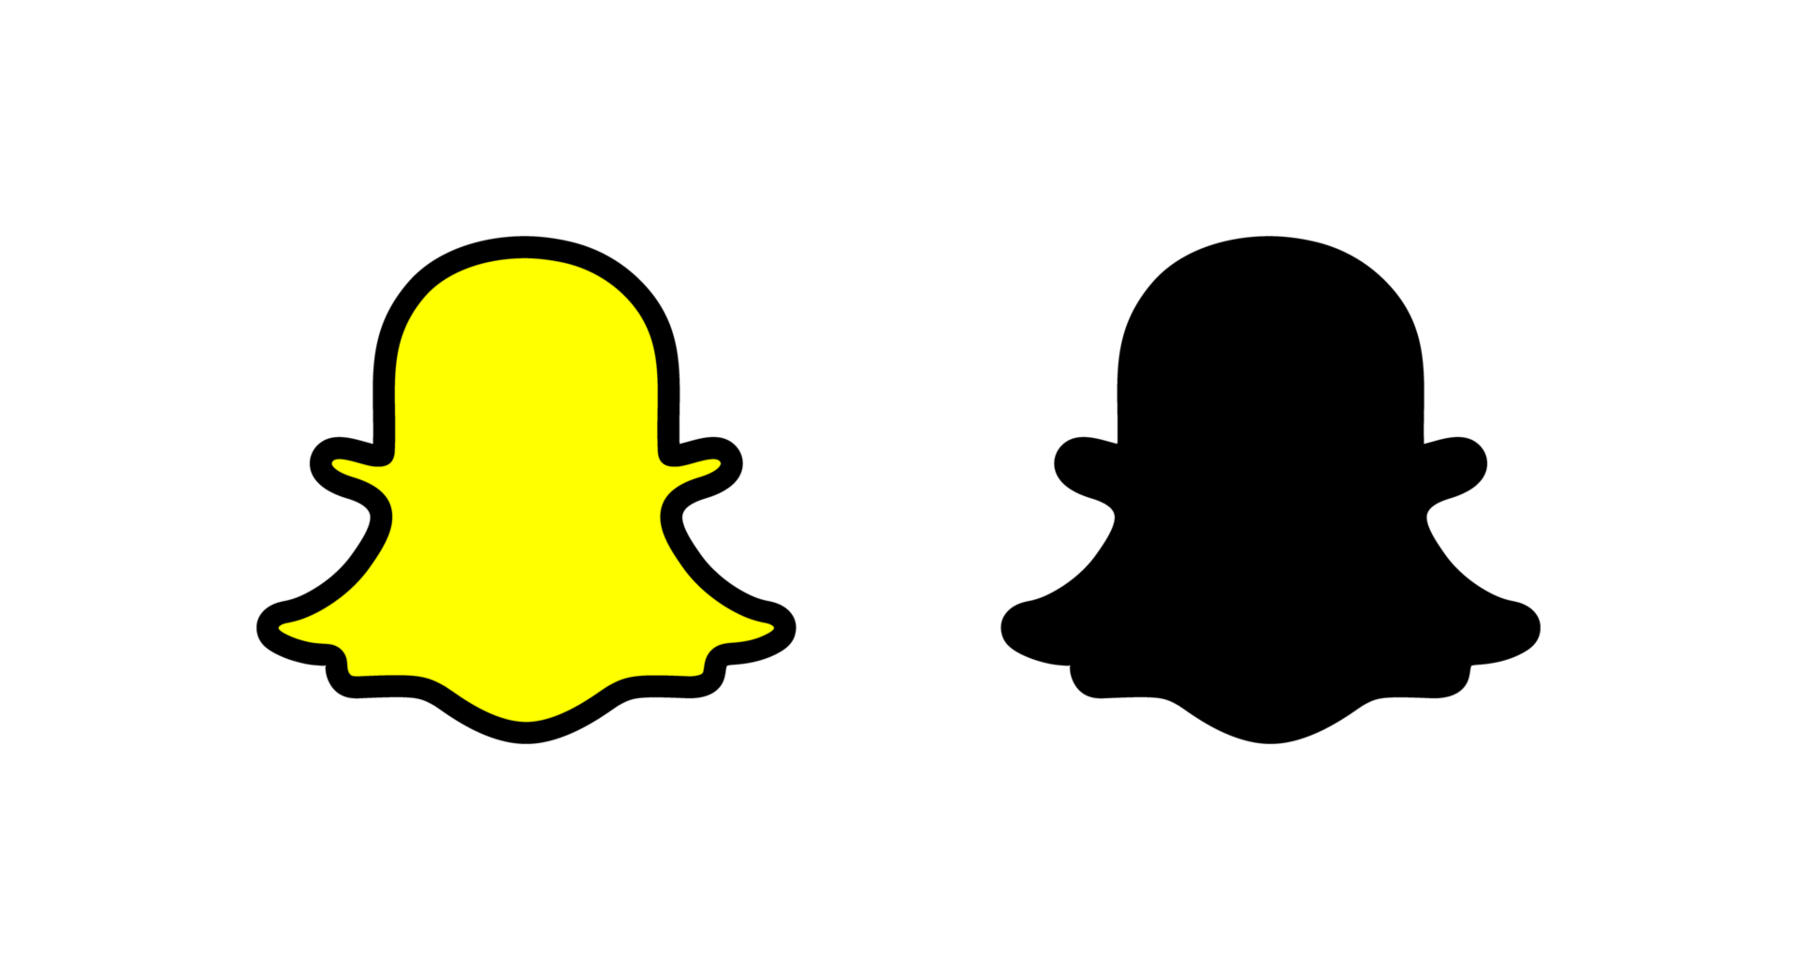 Hãy khám phá hình ảnh liên quan đến biểu tượng Snapchat để tìm hiểu về ứng dụng truyền thông xã hội phổ biến nhất hiện nay!